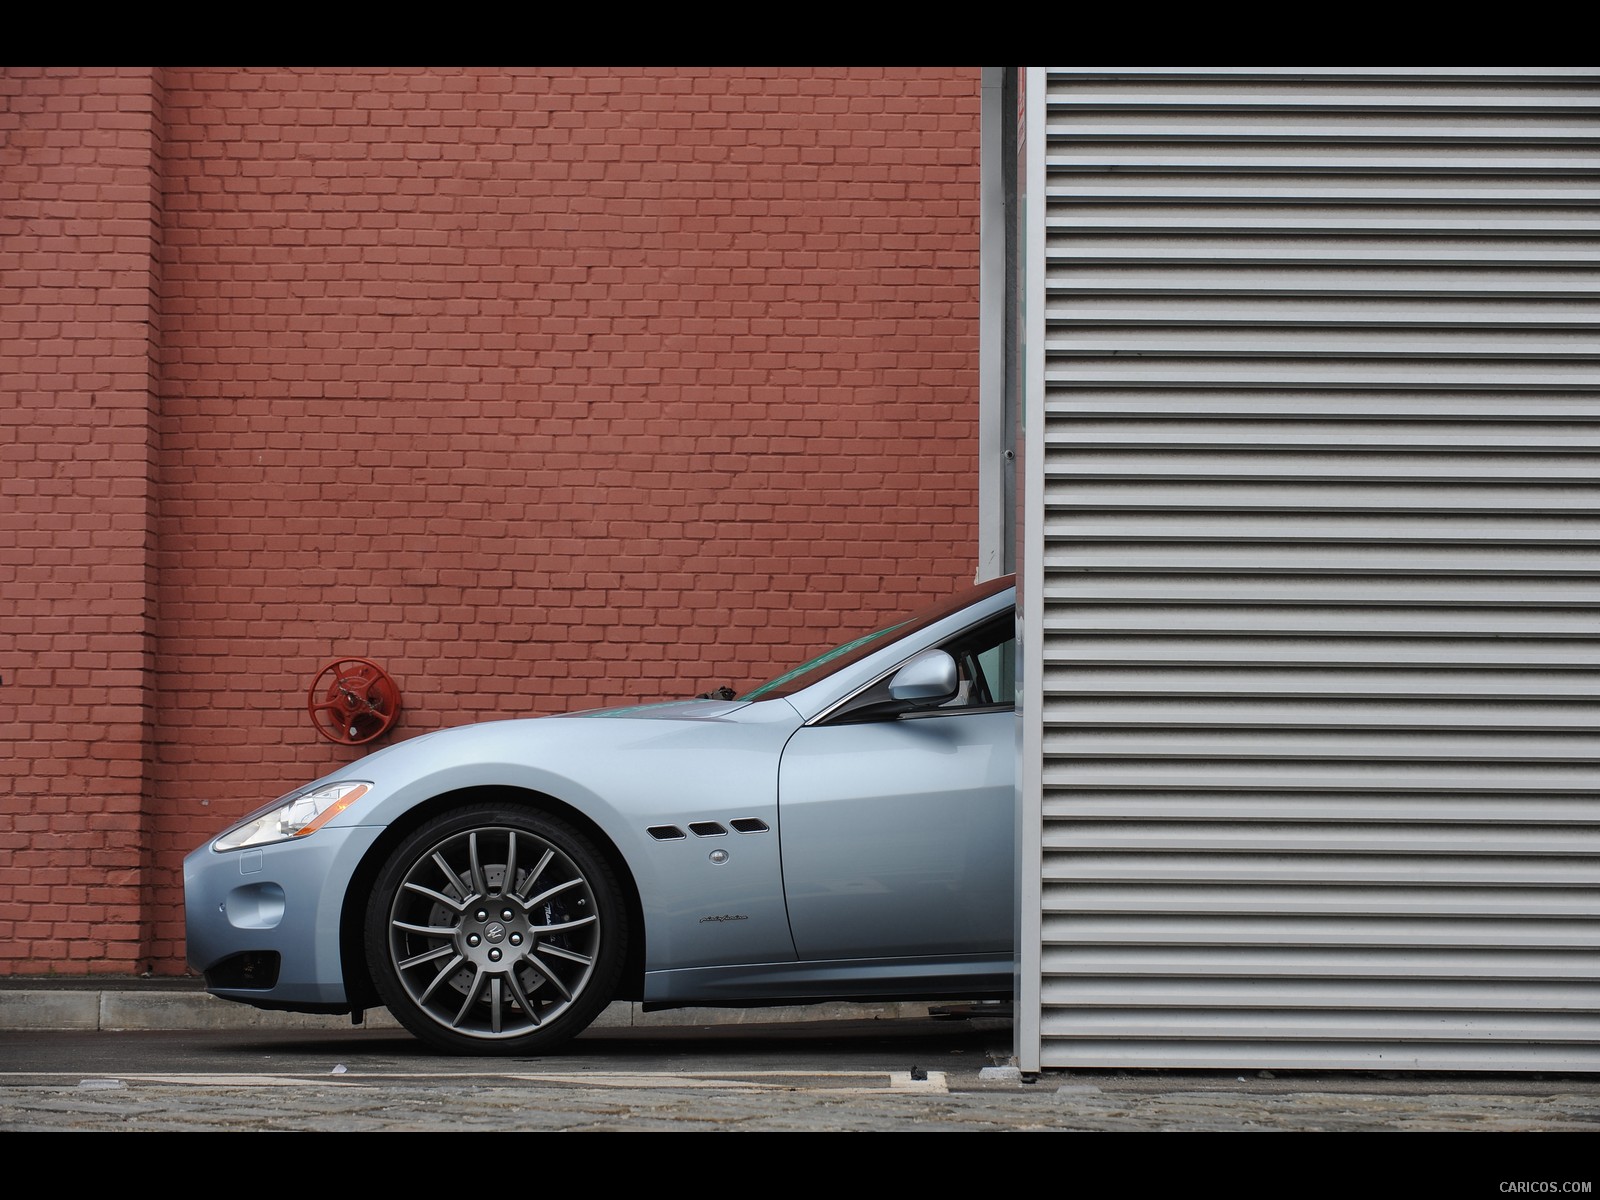 Maserati GranTurismo S Automatic (2010)  - Side, #40 of 58